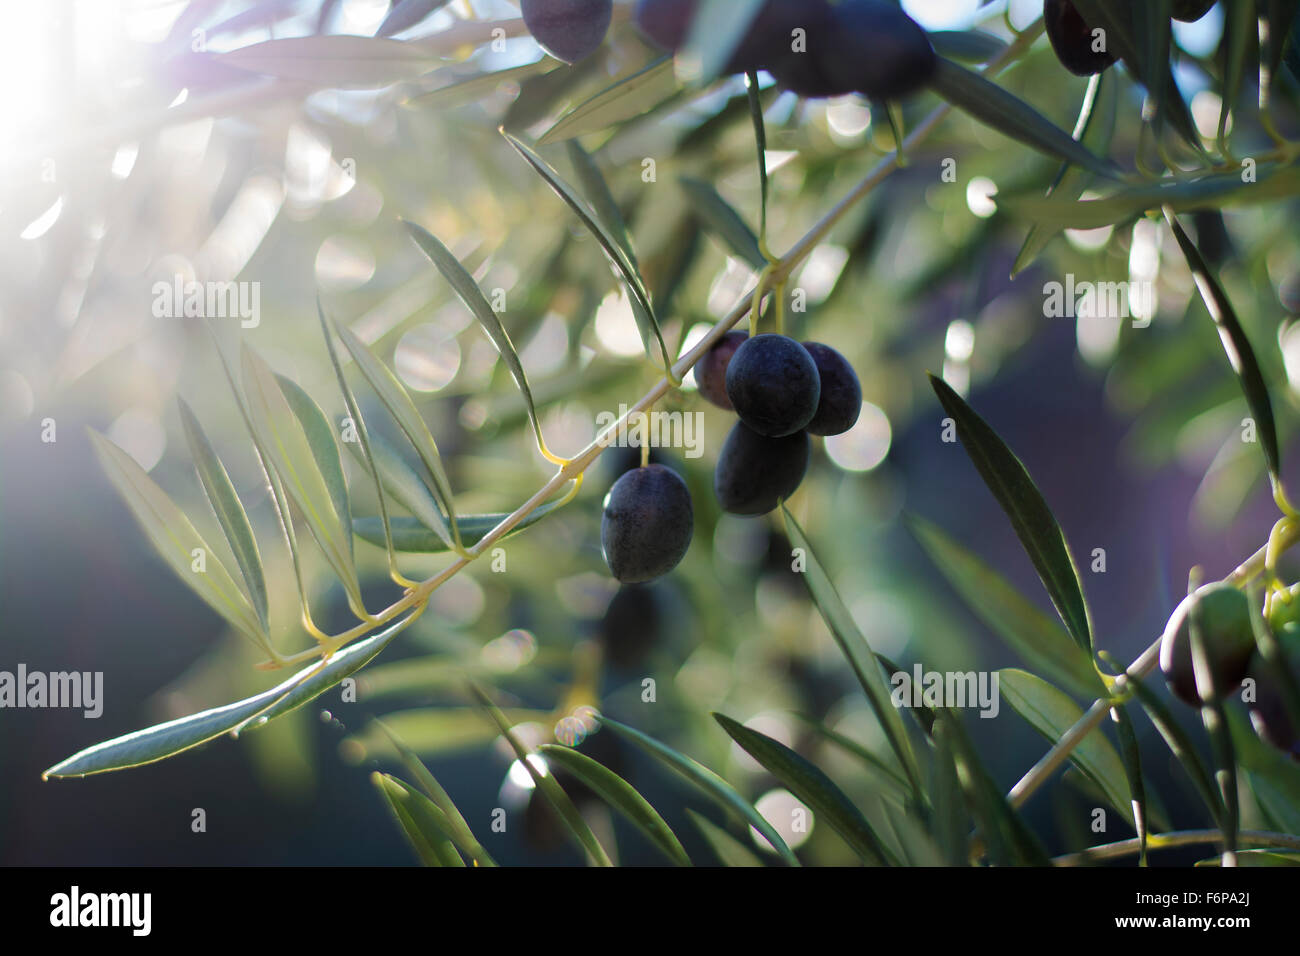 Stimmungsvolle Bild von einem Olivenbaum mit schwarzen Oliven von den Ästen hängen inmitten tiefstehende Sonne zeigt bokeh Stockfoto